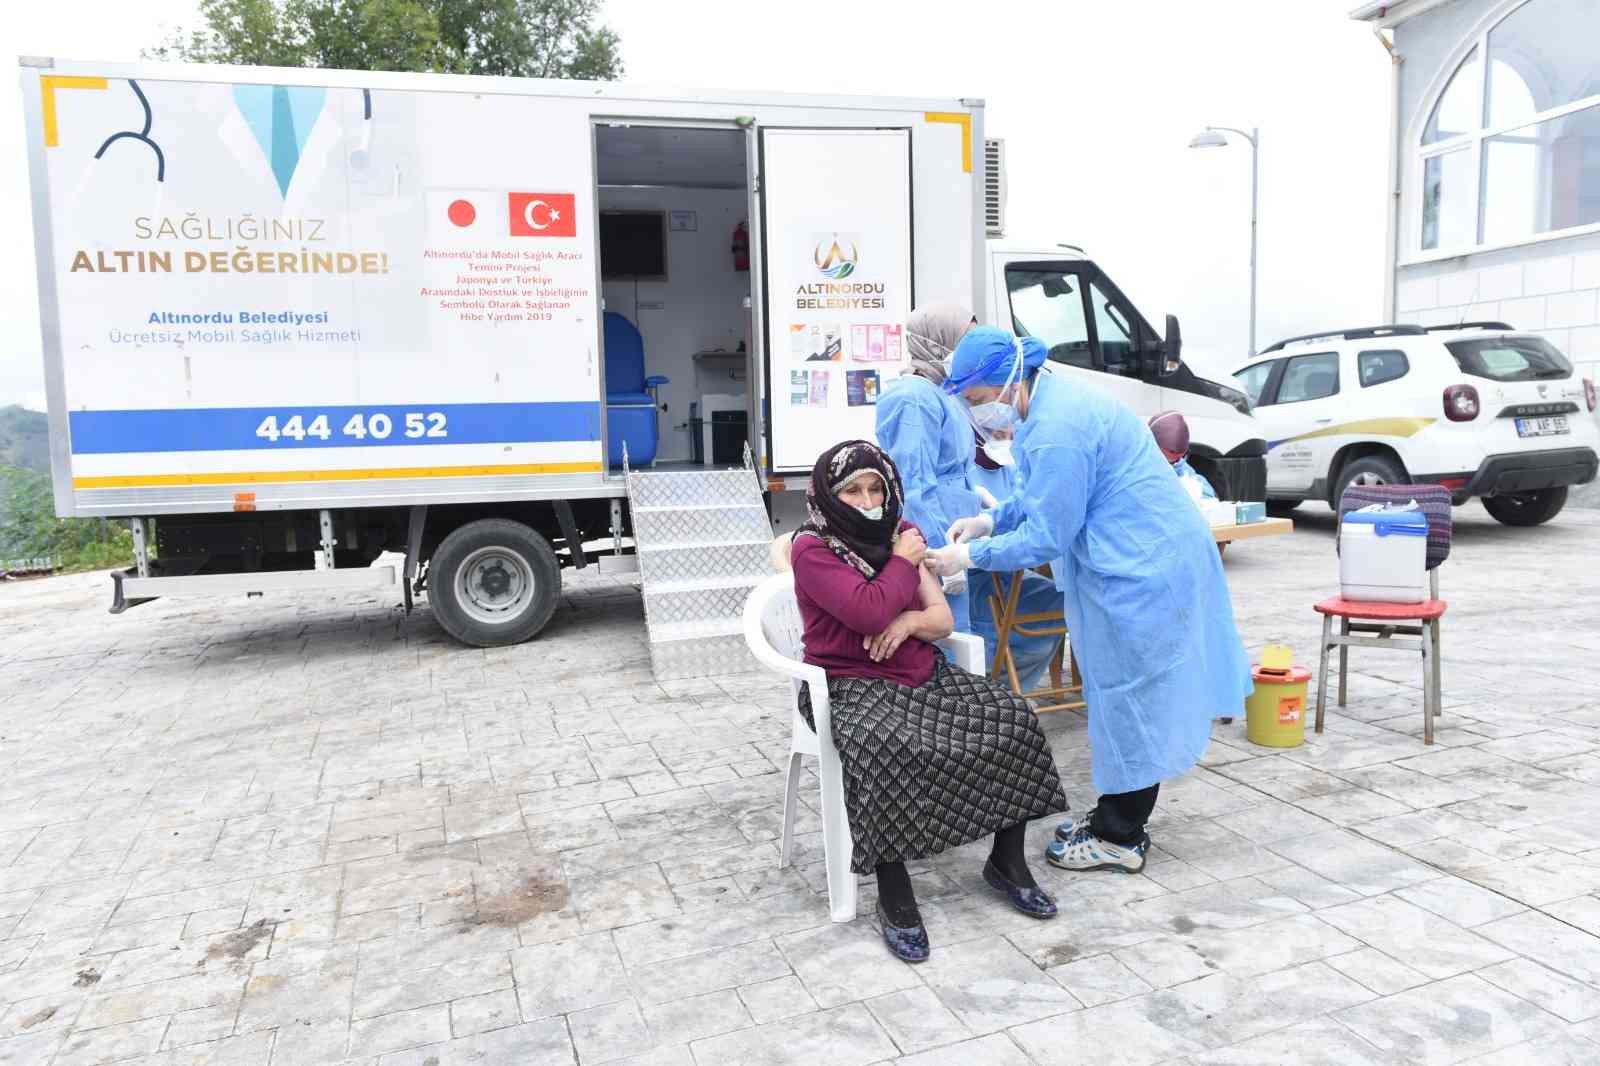 Altınordu’da mobil sağlık tarama aracı aşılama için hizmette